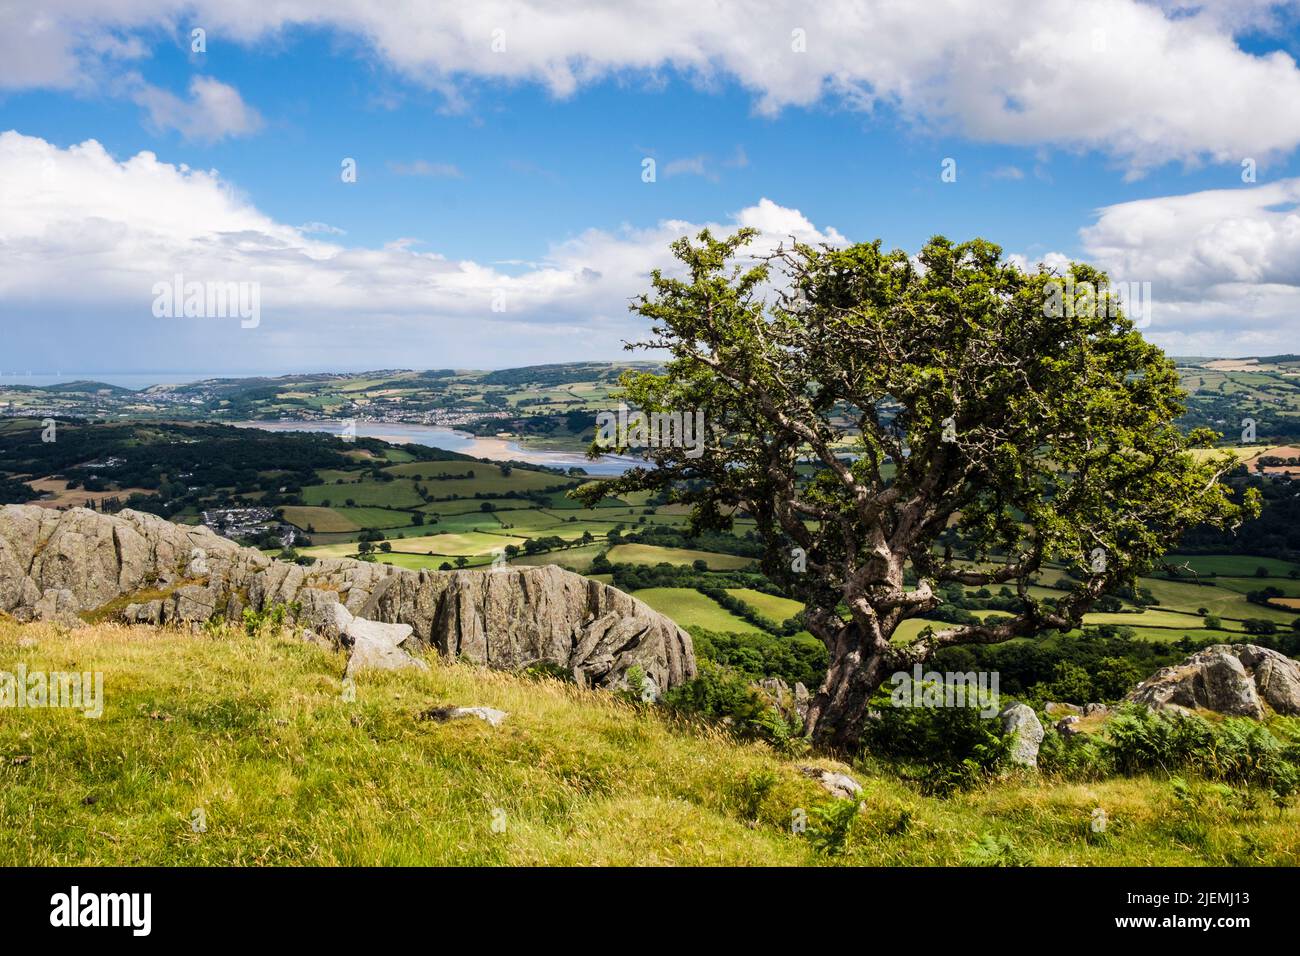 Vue sur la vallée de la rivière Conwy depuis la colline rocheuse de Cerrig-y-ddinas dans le nord de Snowdonia. Conwy, comté de Conwy, nord du pays de Galles, Royaume-Uni, Grande-Bretagne Banque D'Images